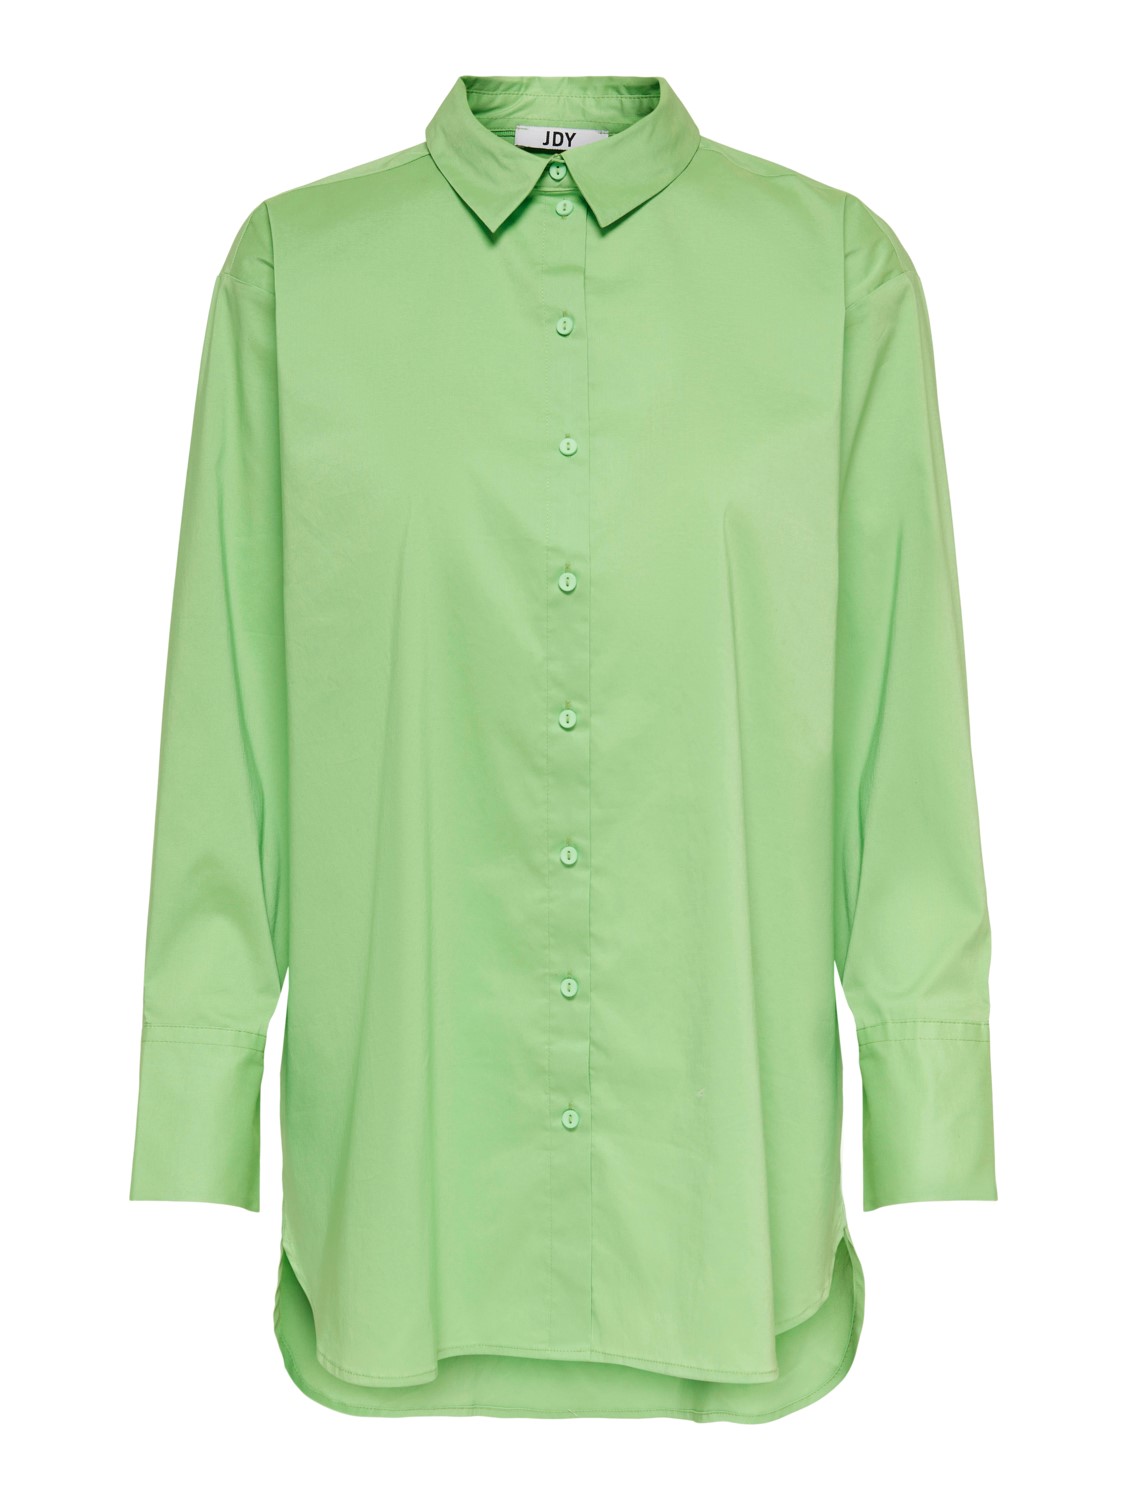 JDY Mio L/S Long Shirt, grønn